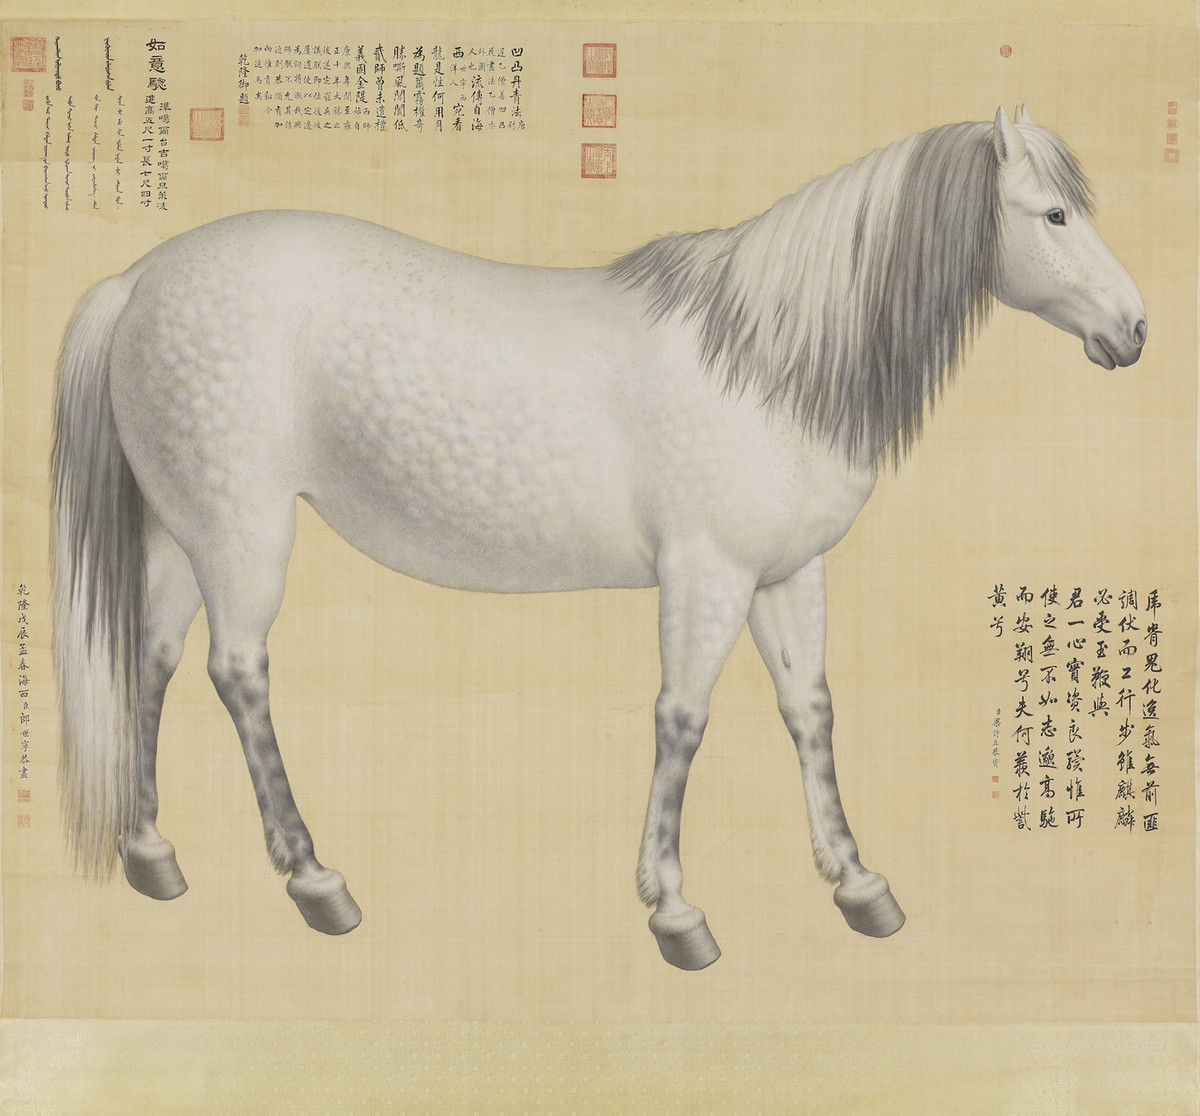 Музей императорского дворца в Тайбэе публикует в свободном доступе более 70 000 экспонатов 1 5